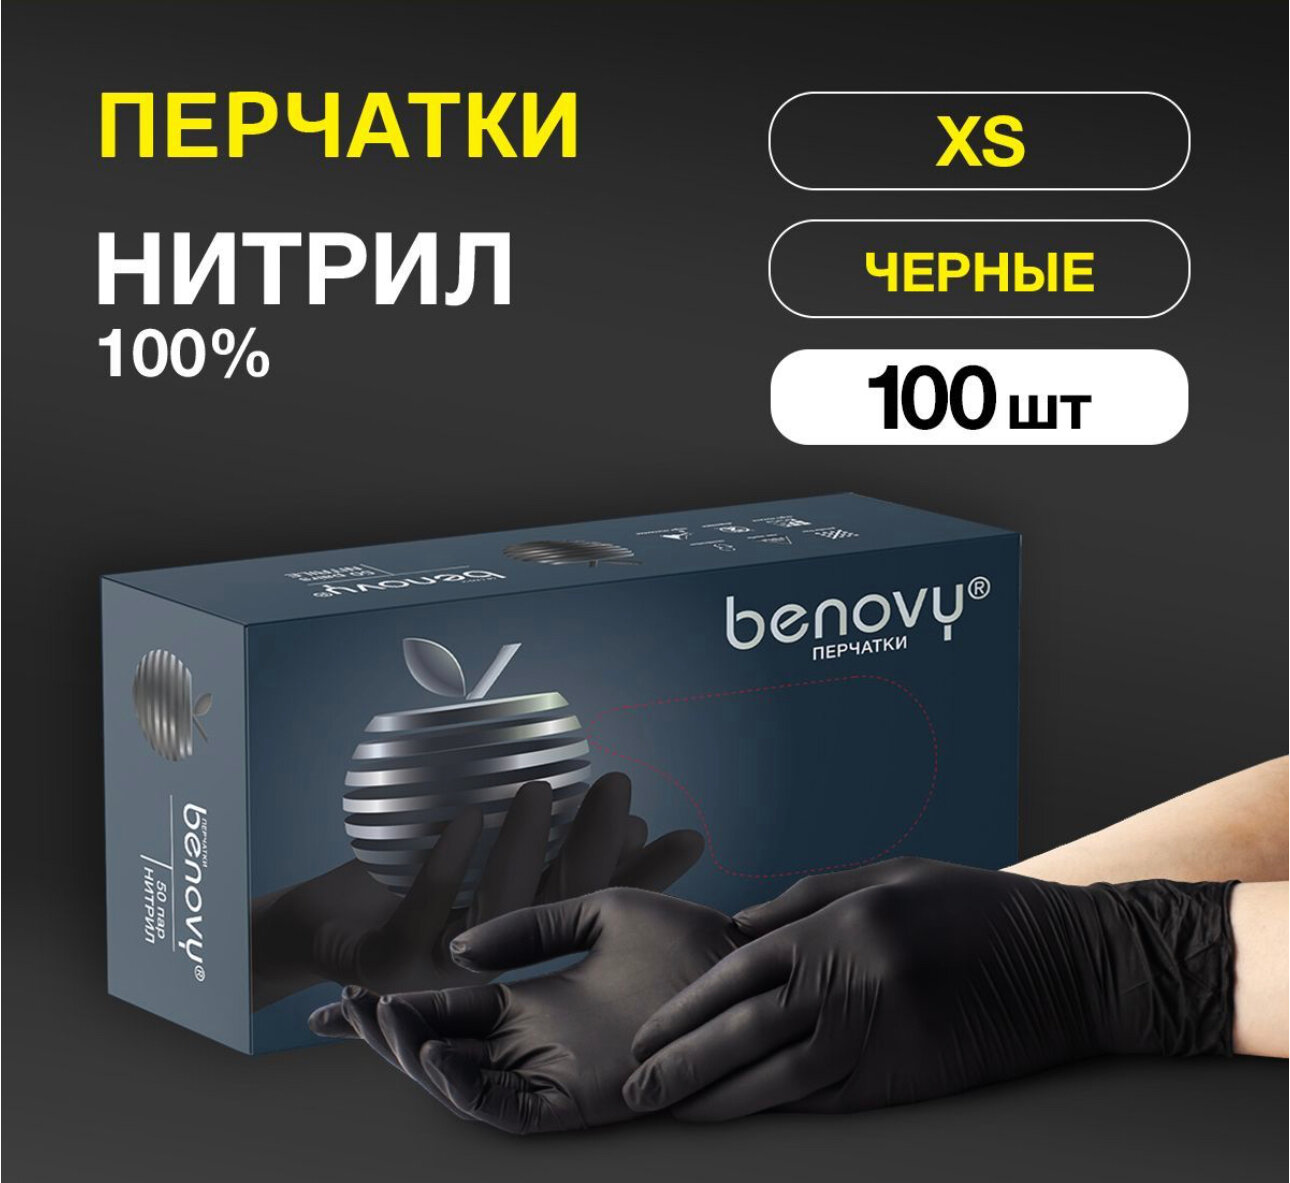 Перчатки Benovy нитриловые, черные, одноразовые, 100шт/50пар, размер XS